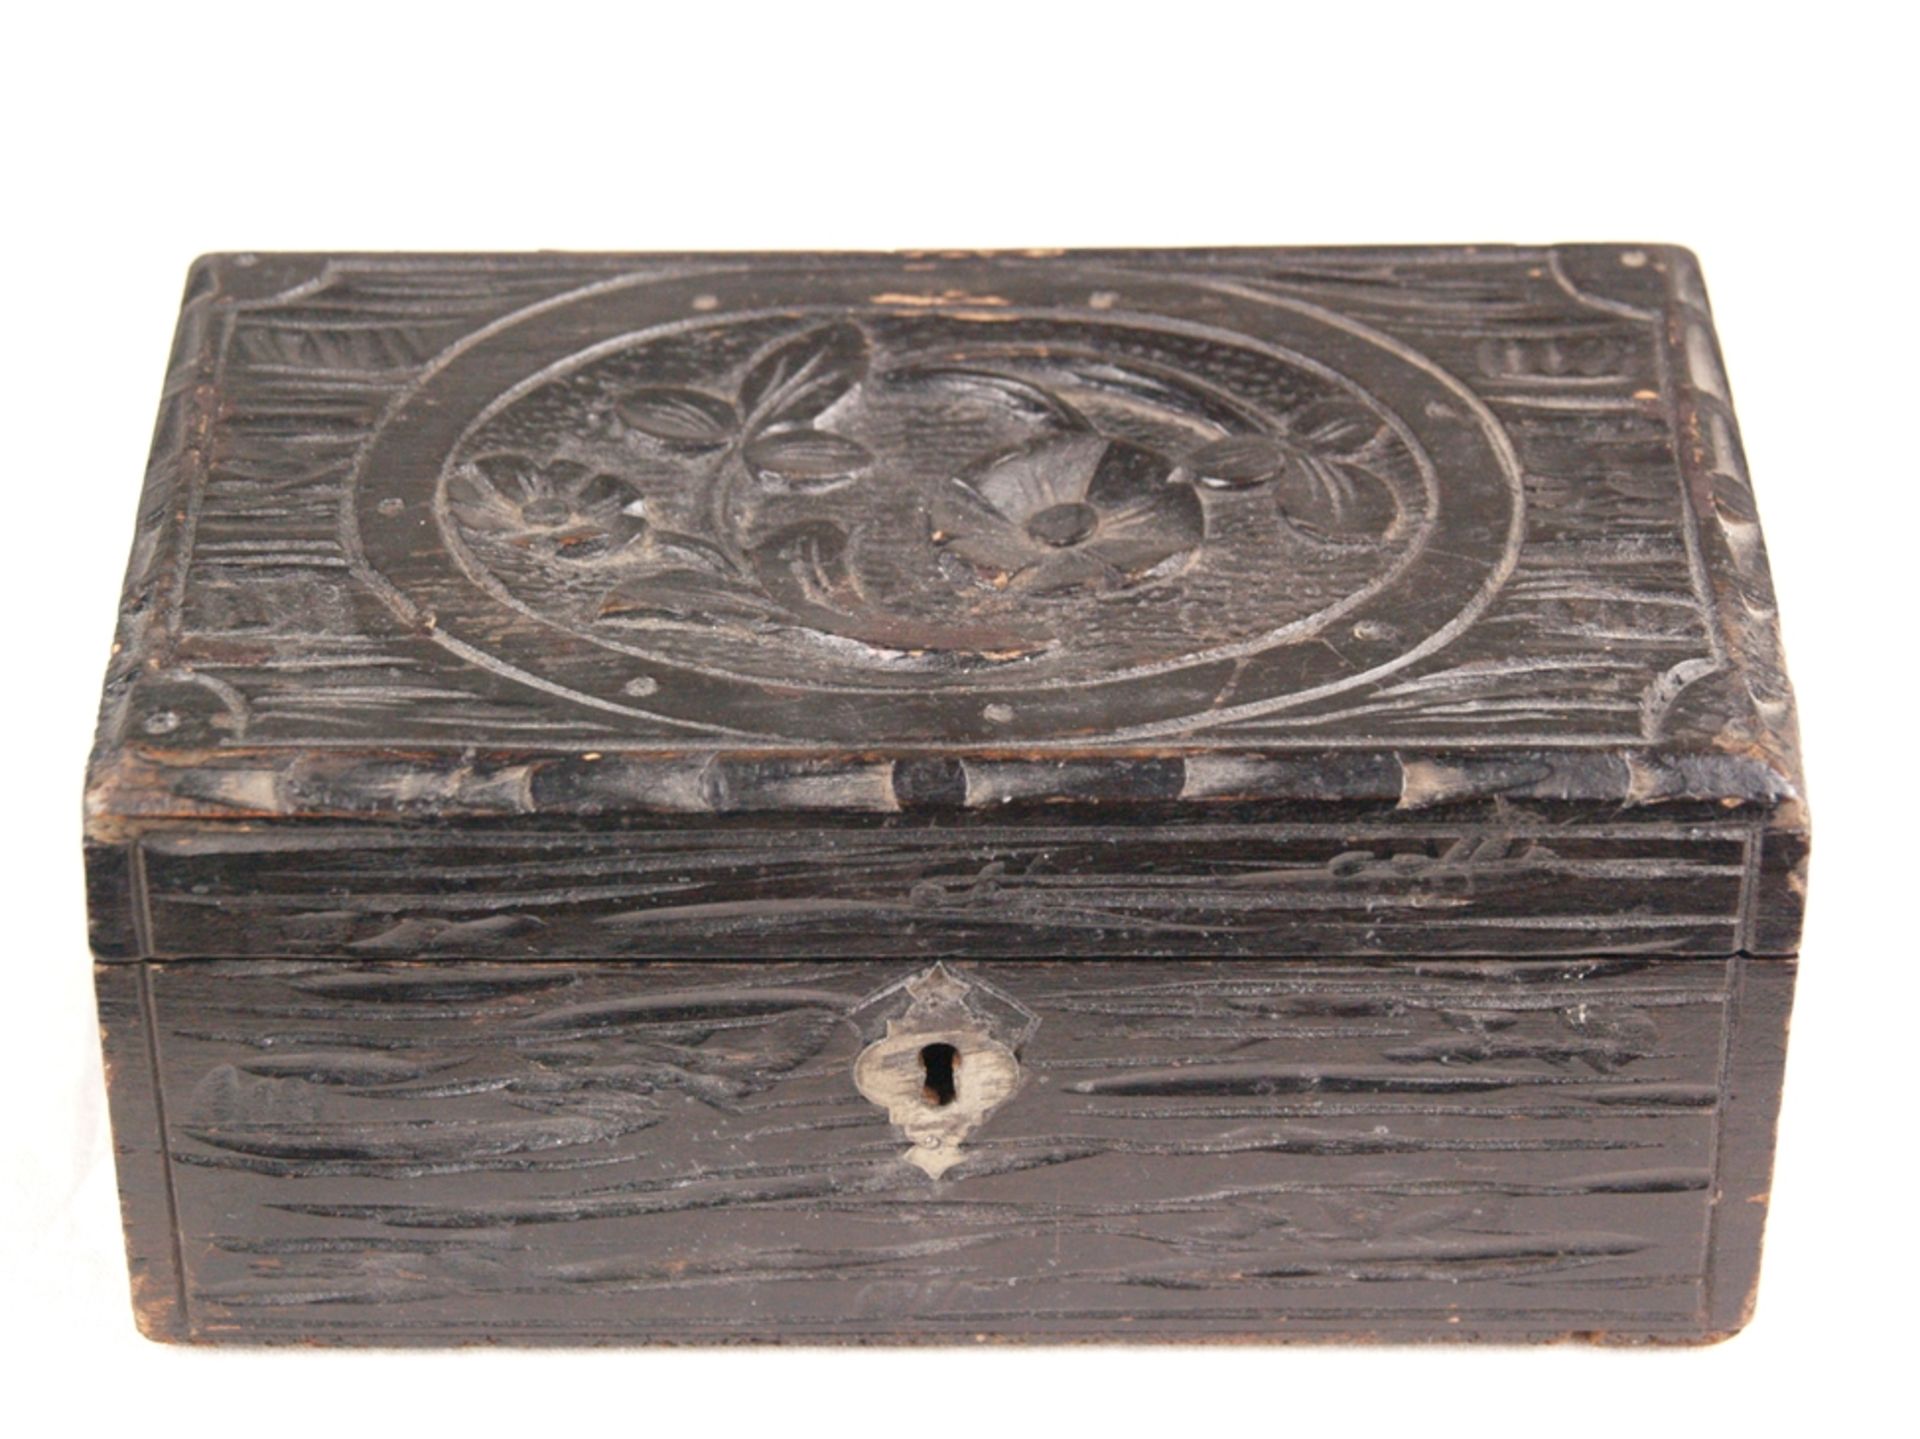 Schatulle - Holz, Schnitzdekor, Deckel mit geschnitztem Blumendekor, schwarz gebeizt, teilweise